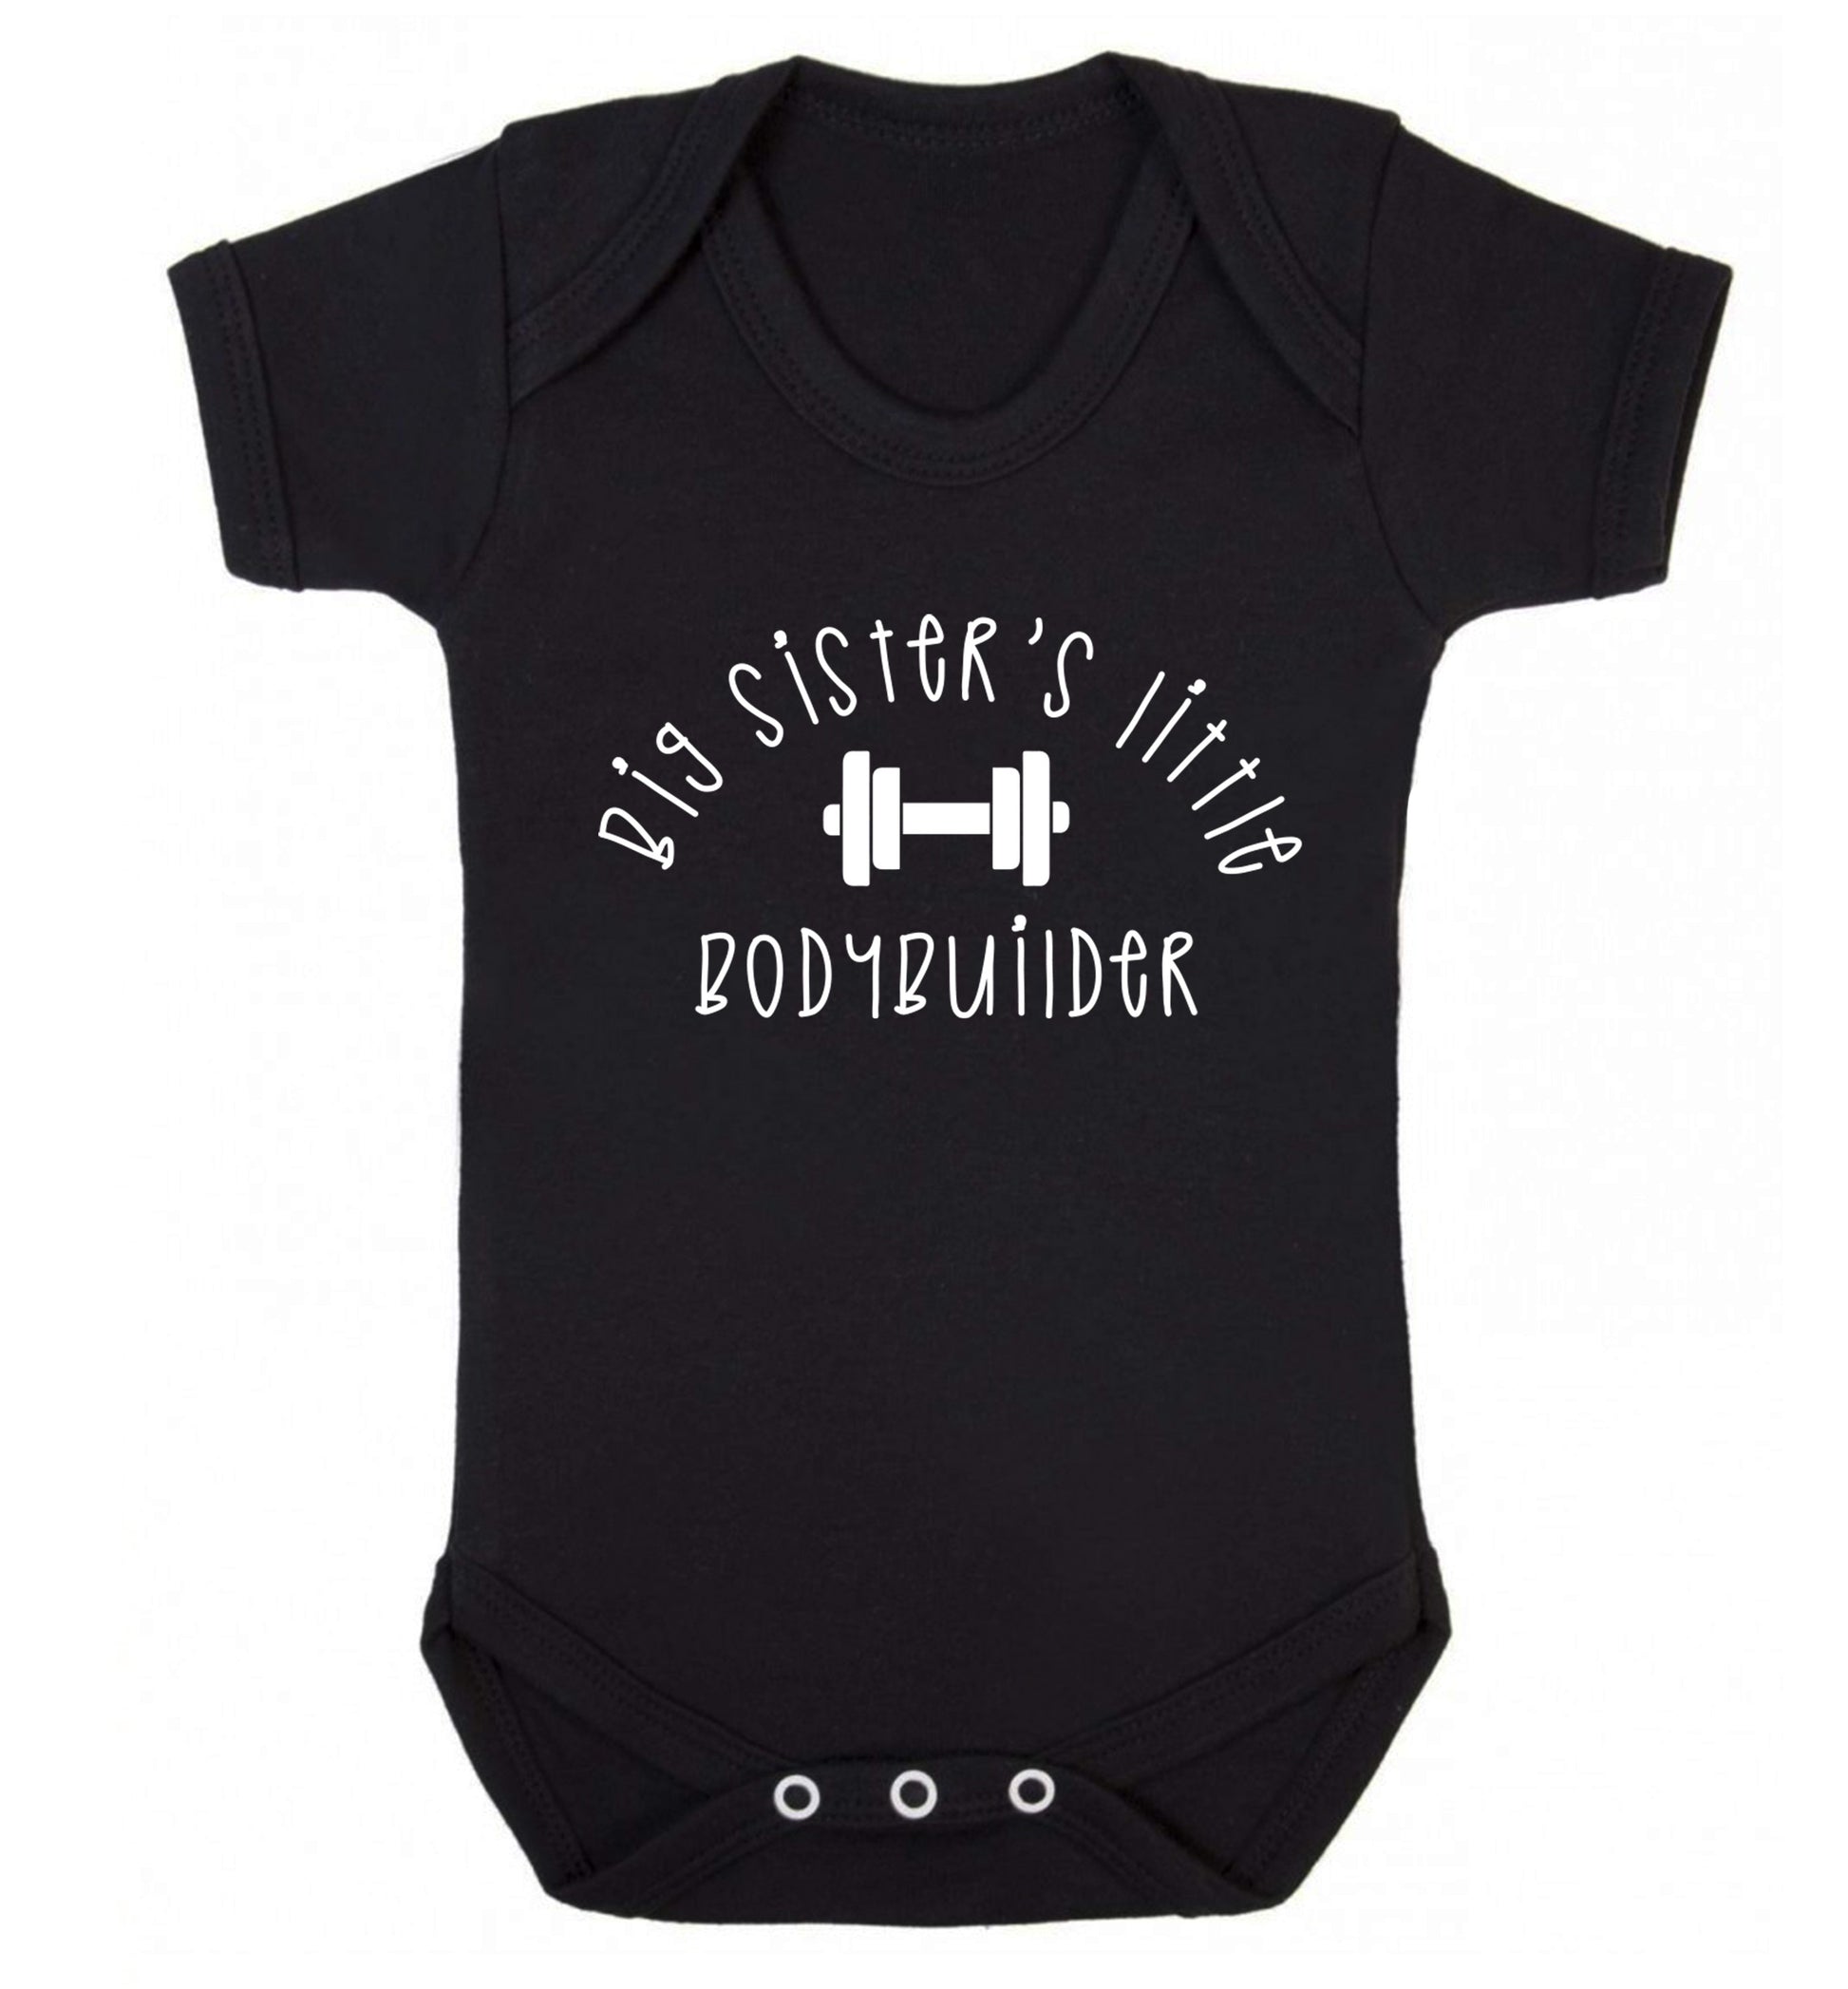 Big sister's little bodybuilder Baby Vest black 18-24 months